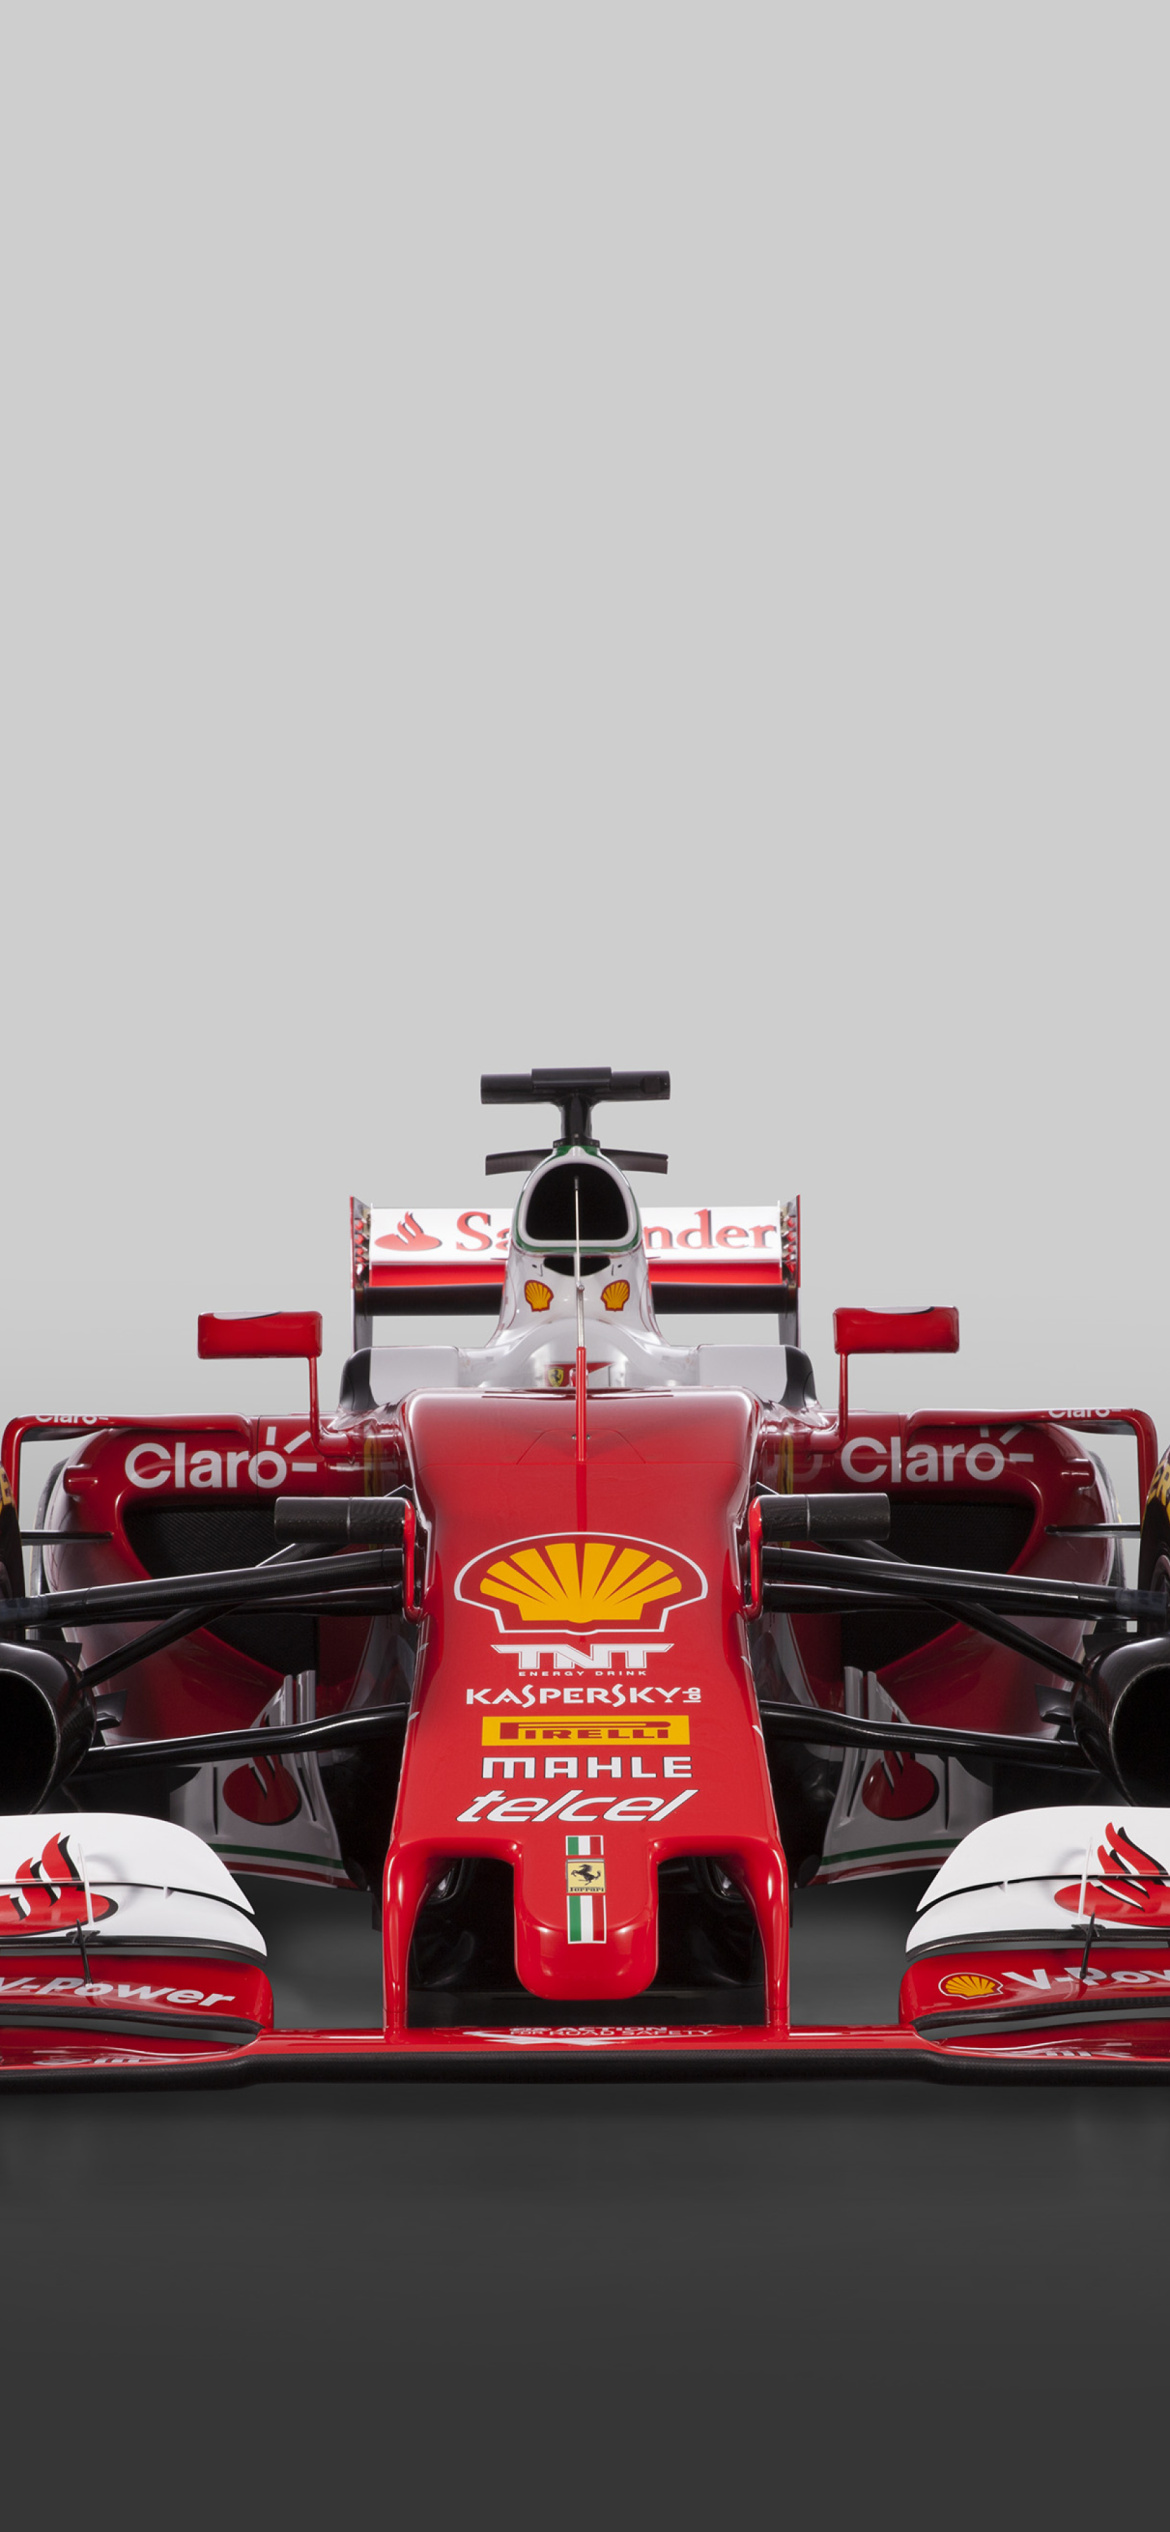 Ferrari Formula 1 wallpaper 1170x2532